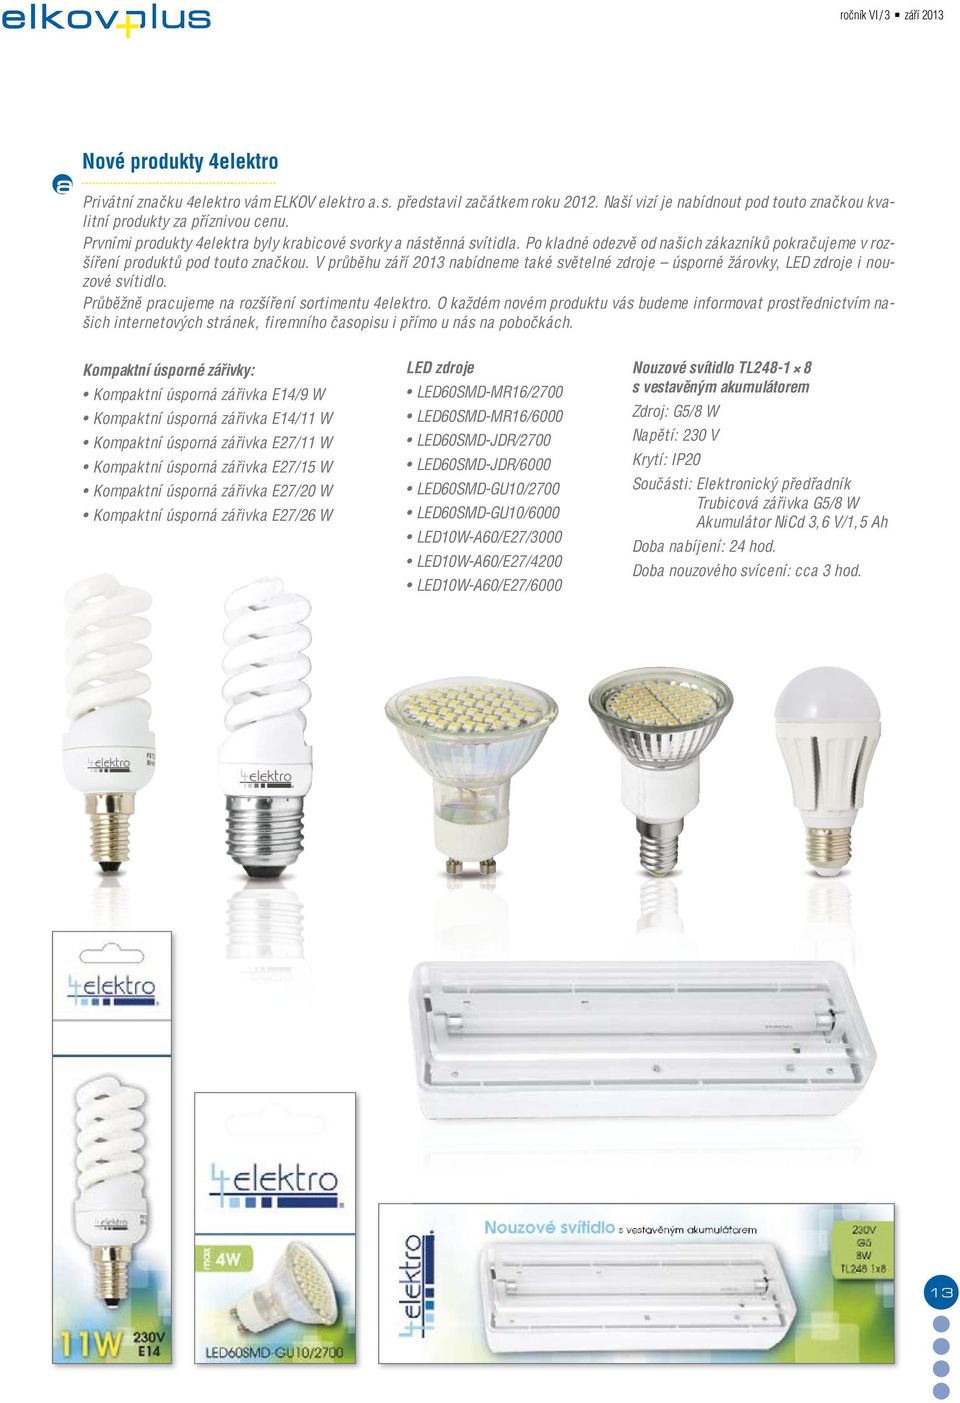 V průběhu září 2013 nabídneme také světelné zdroje úsporné žárovky, LED zdroje i nouzové svítidlo. Průběžně pracujeme na rozšíření sortimentu 4elektro.